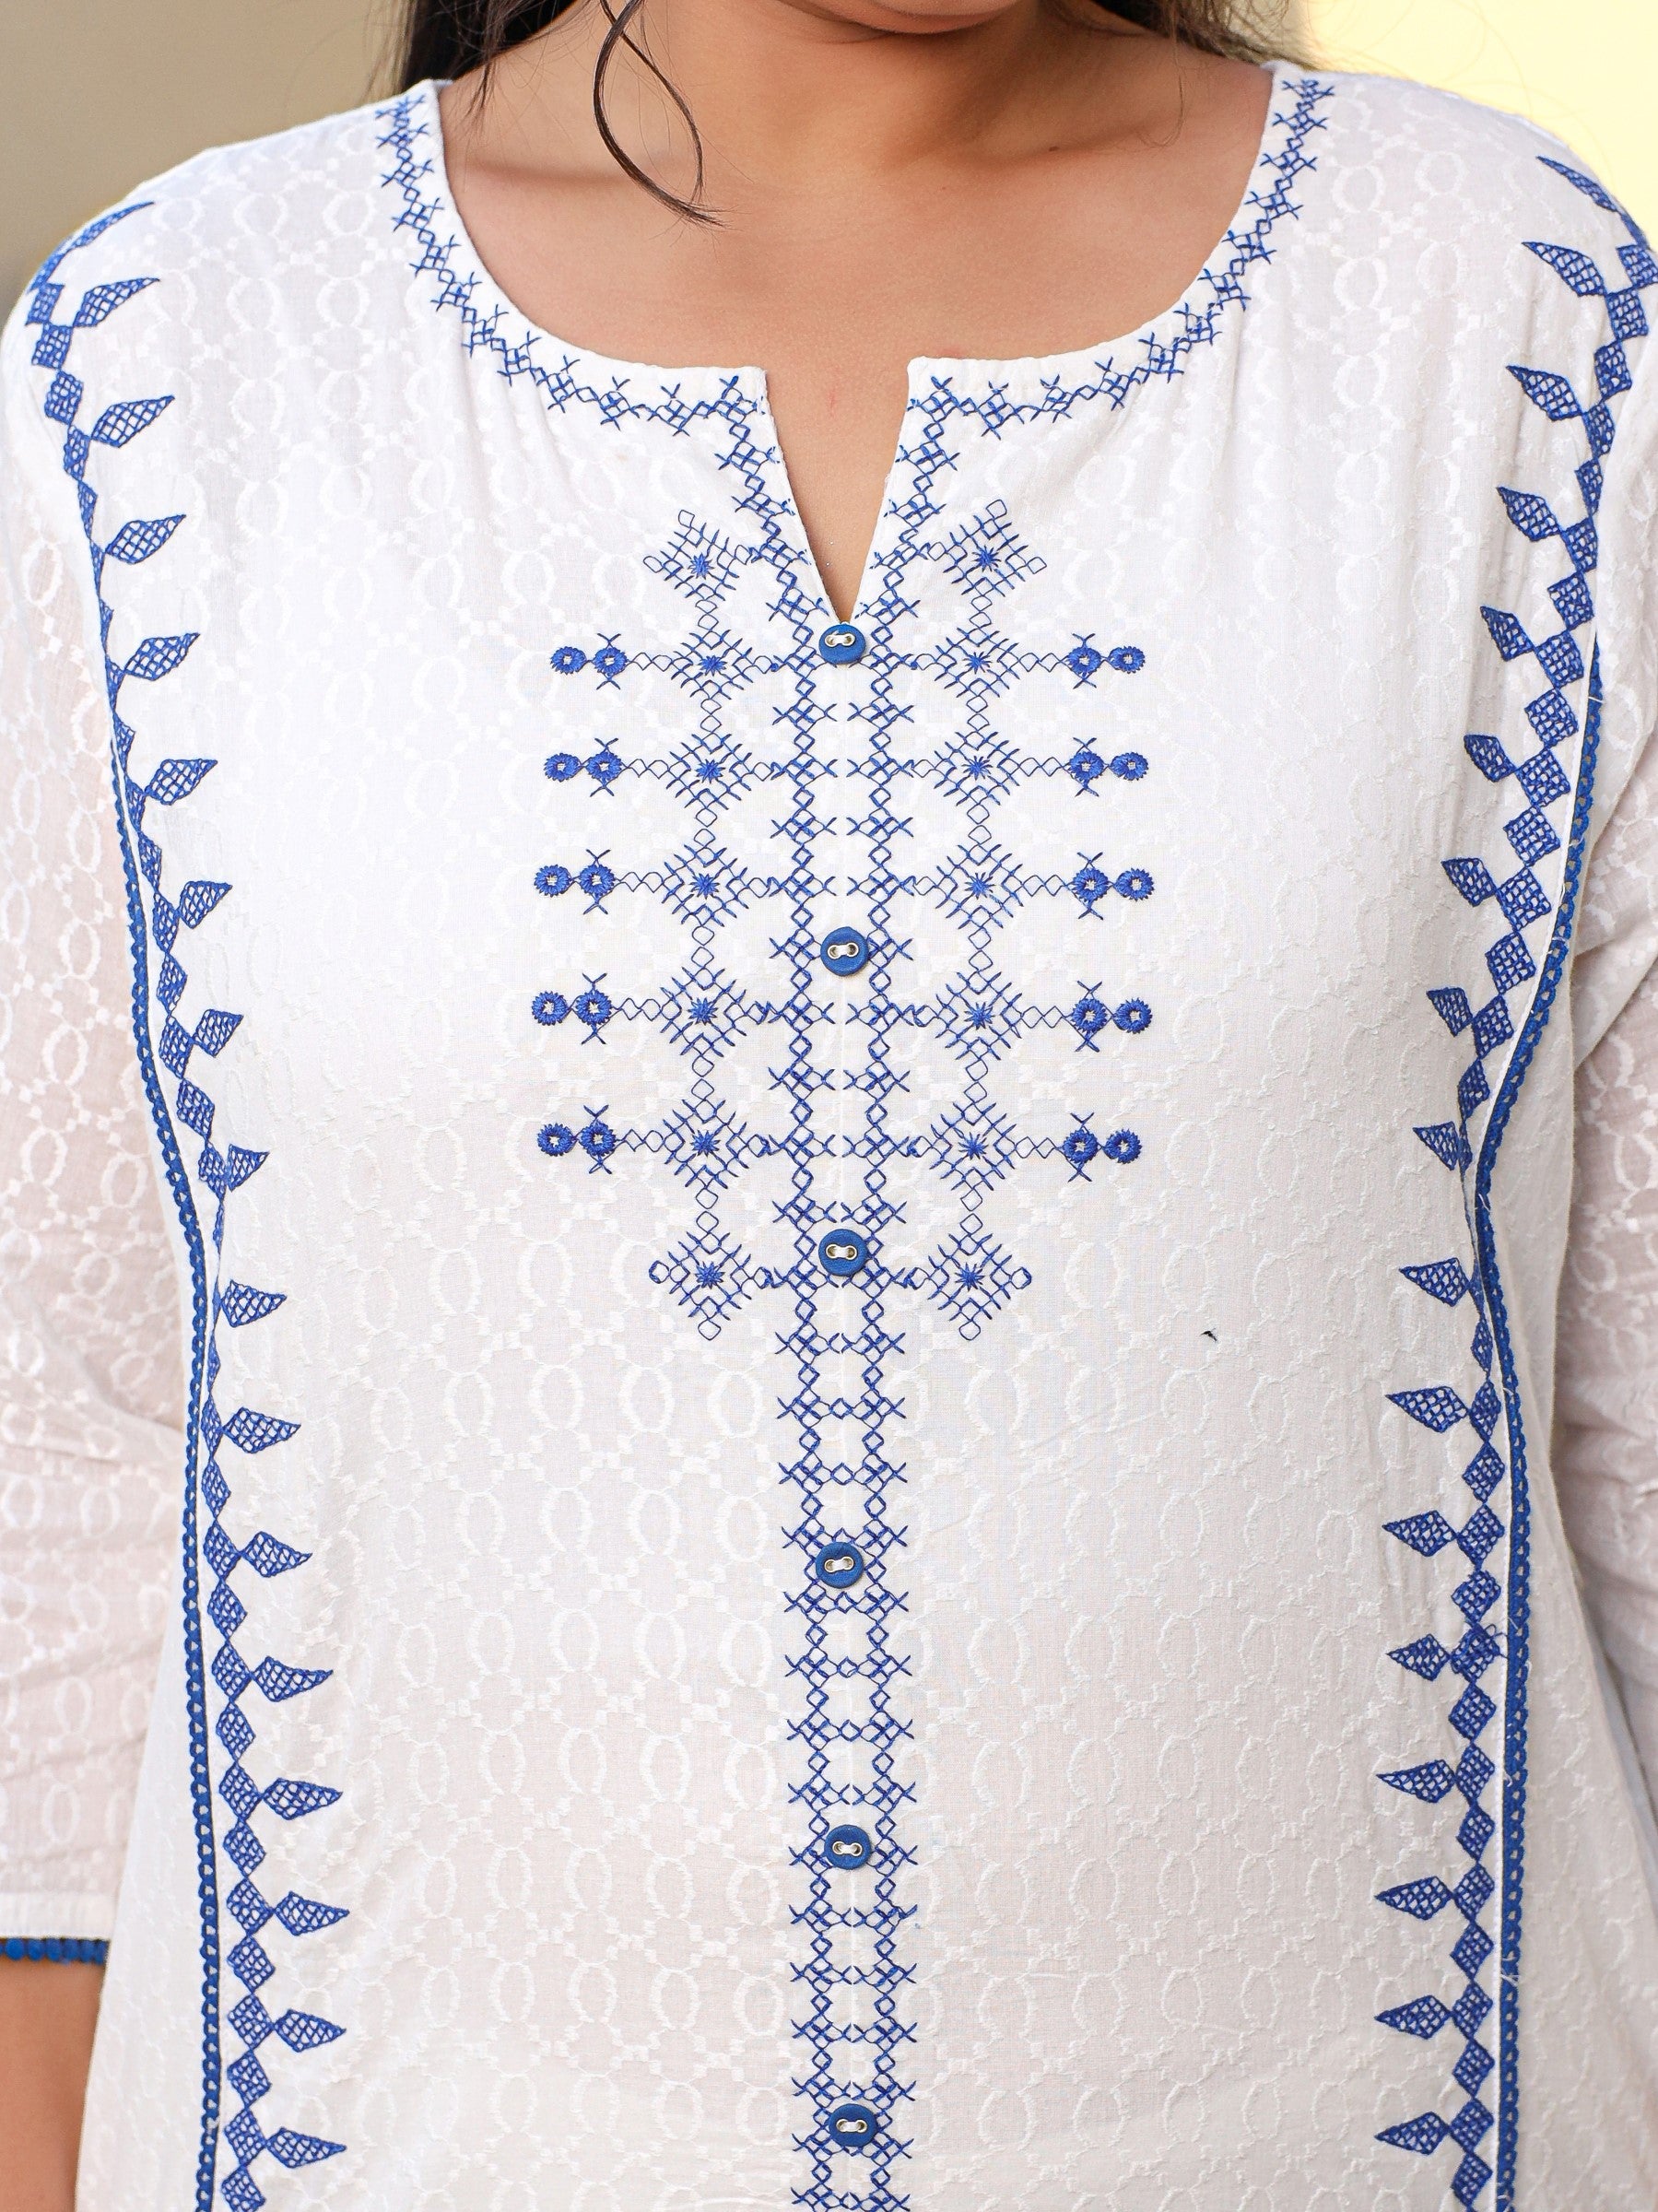 Juniper White & Blue Cross Stitch Embroidered Cotton Dobby Plus Size Kurta Palazzo & Dupatta Set With Lace & Fabric Bottons